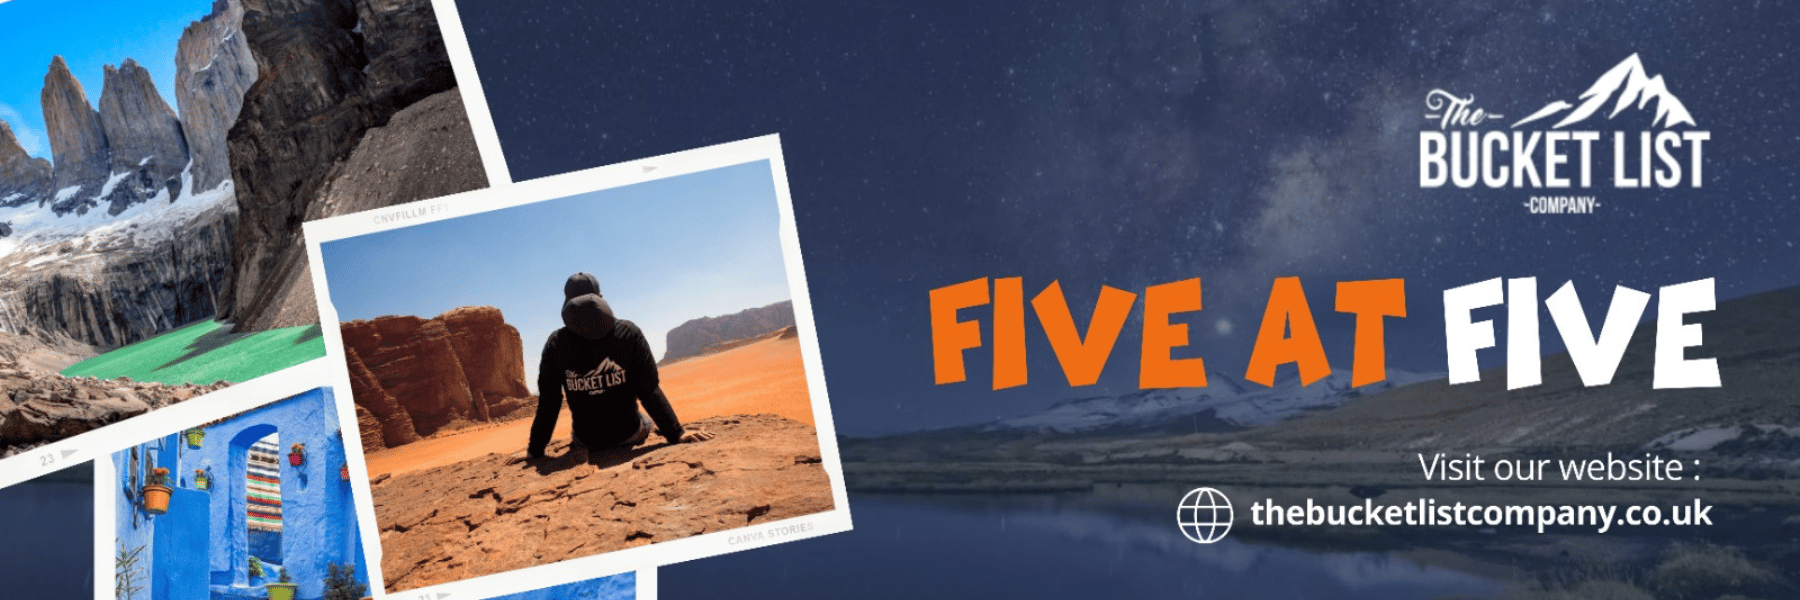 five at five website header